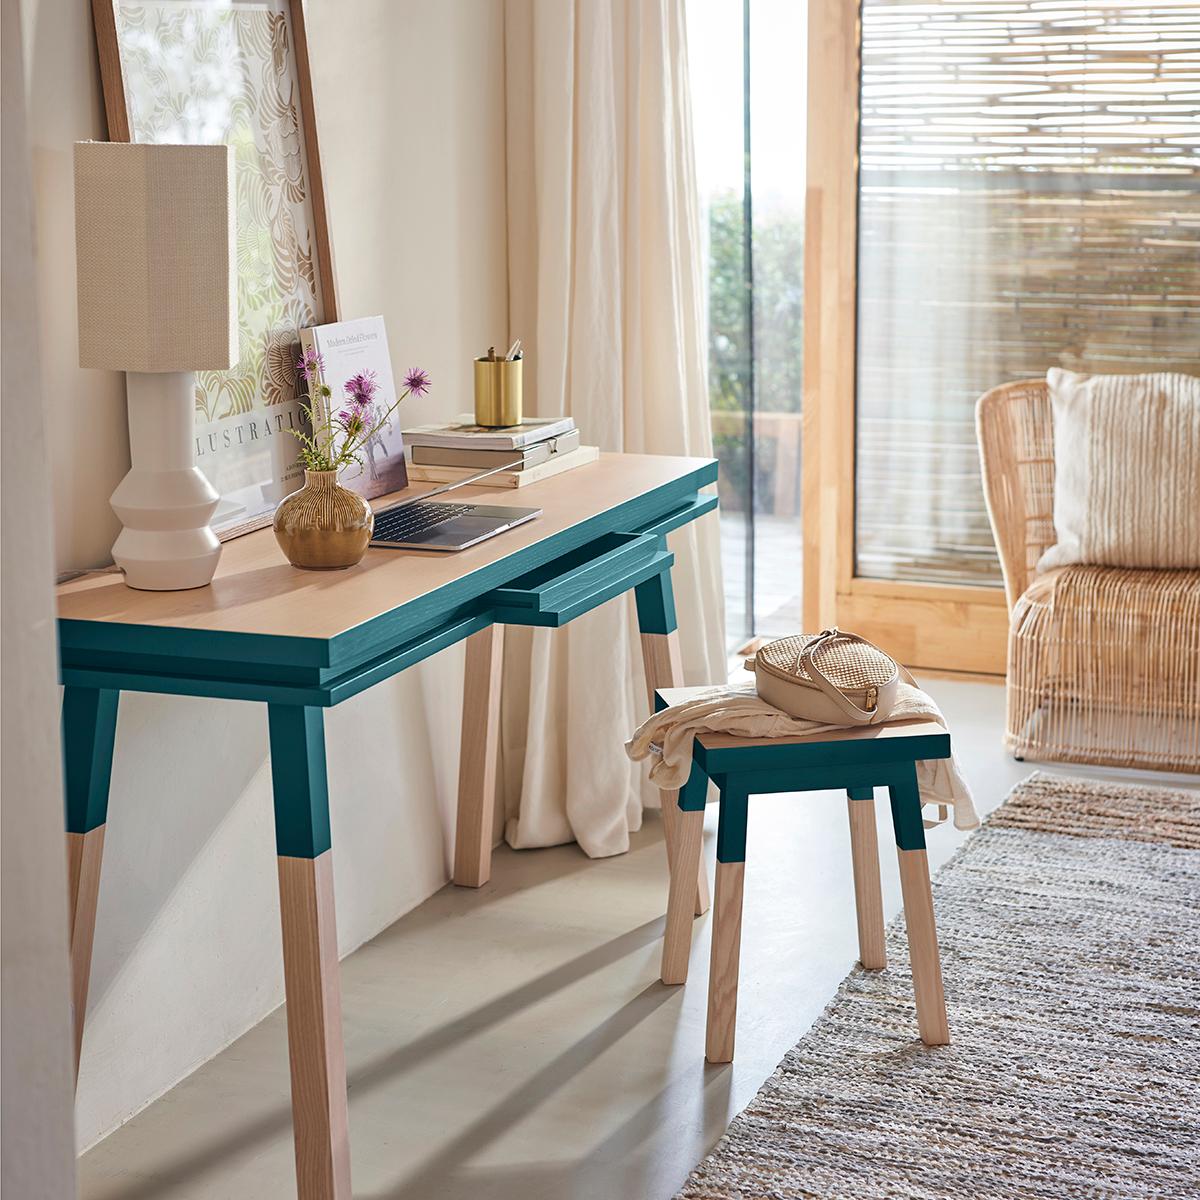 Dieser meerblaue rechteckige Konsolentisch / Schreibtisch wurde von Eric Gizard in Paris entworfen. Er ist zu 100 % aus massivem Eschenholz aus nachhaltig bewirtschafteten und PEFC-zertifizierten französischen Wäldern gefertigt. 

Collection